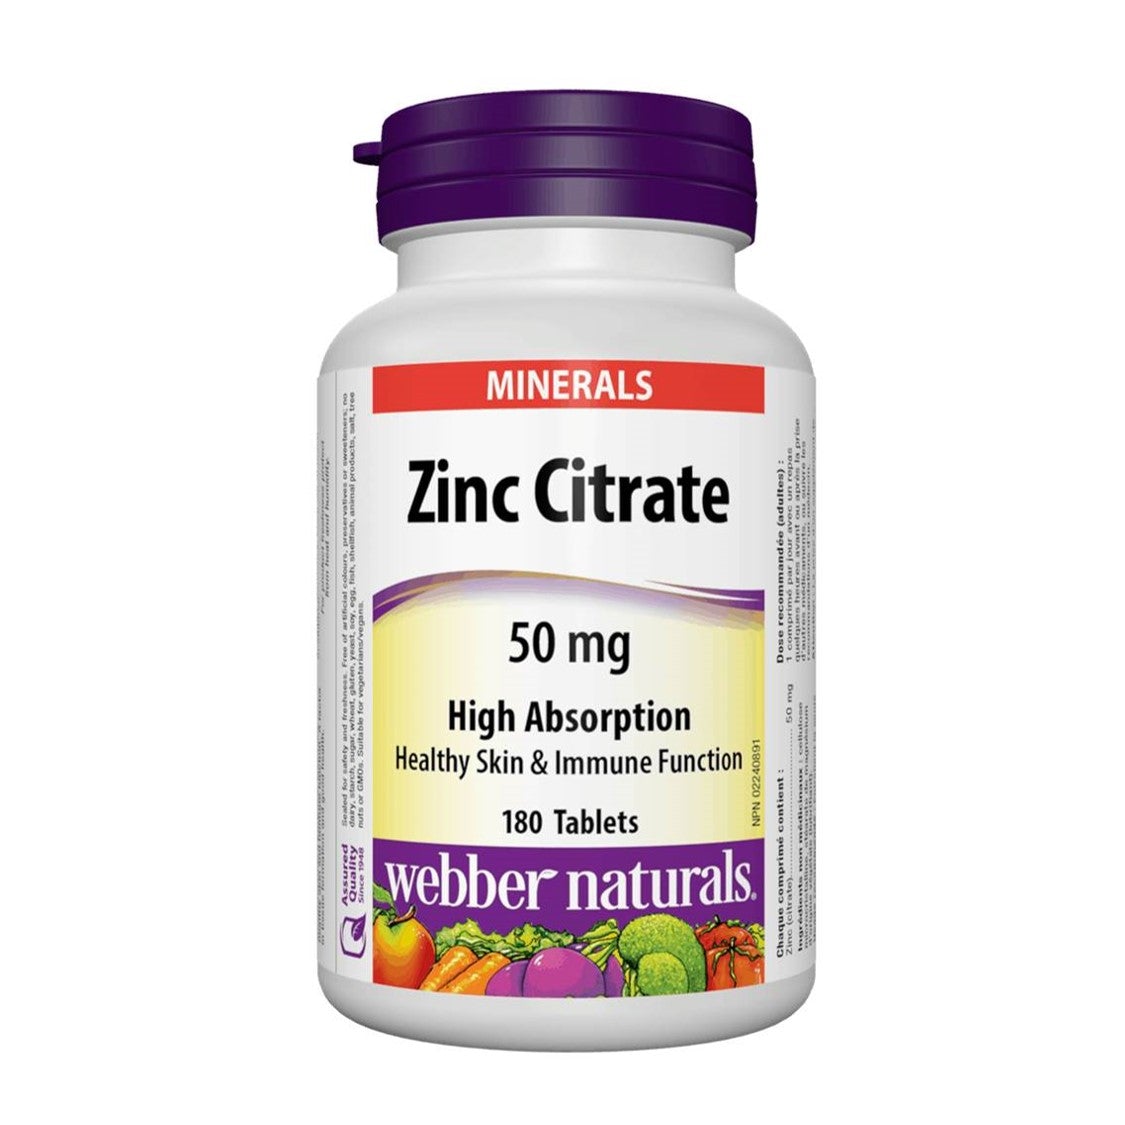 webber-naturals-zinc-citrate-50mg-180tablets-169-118